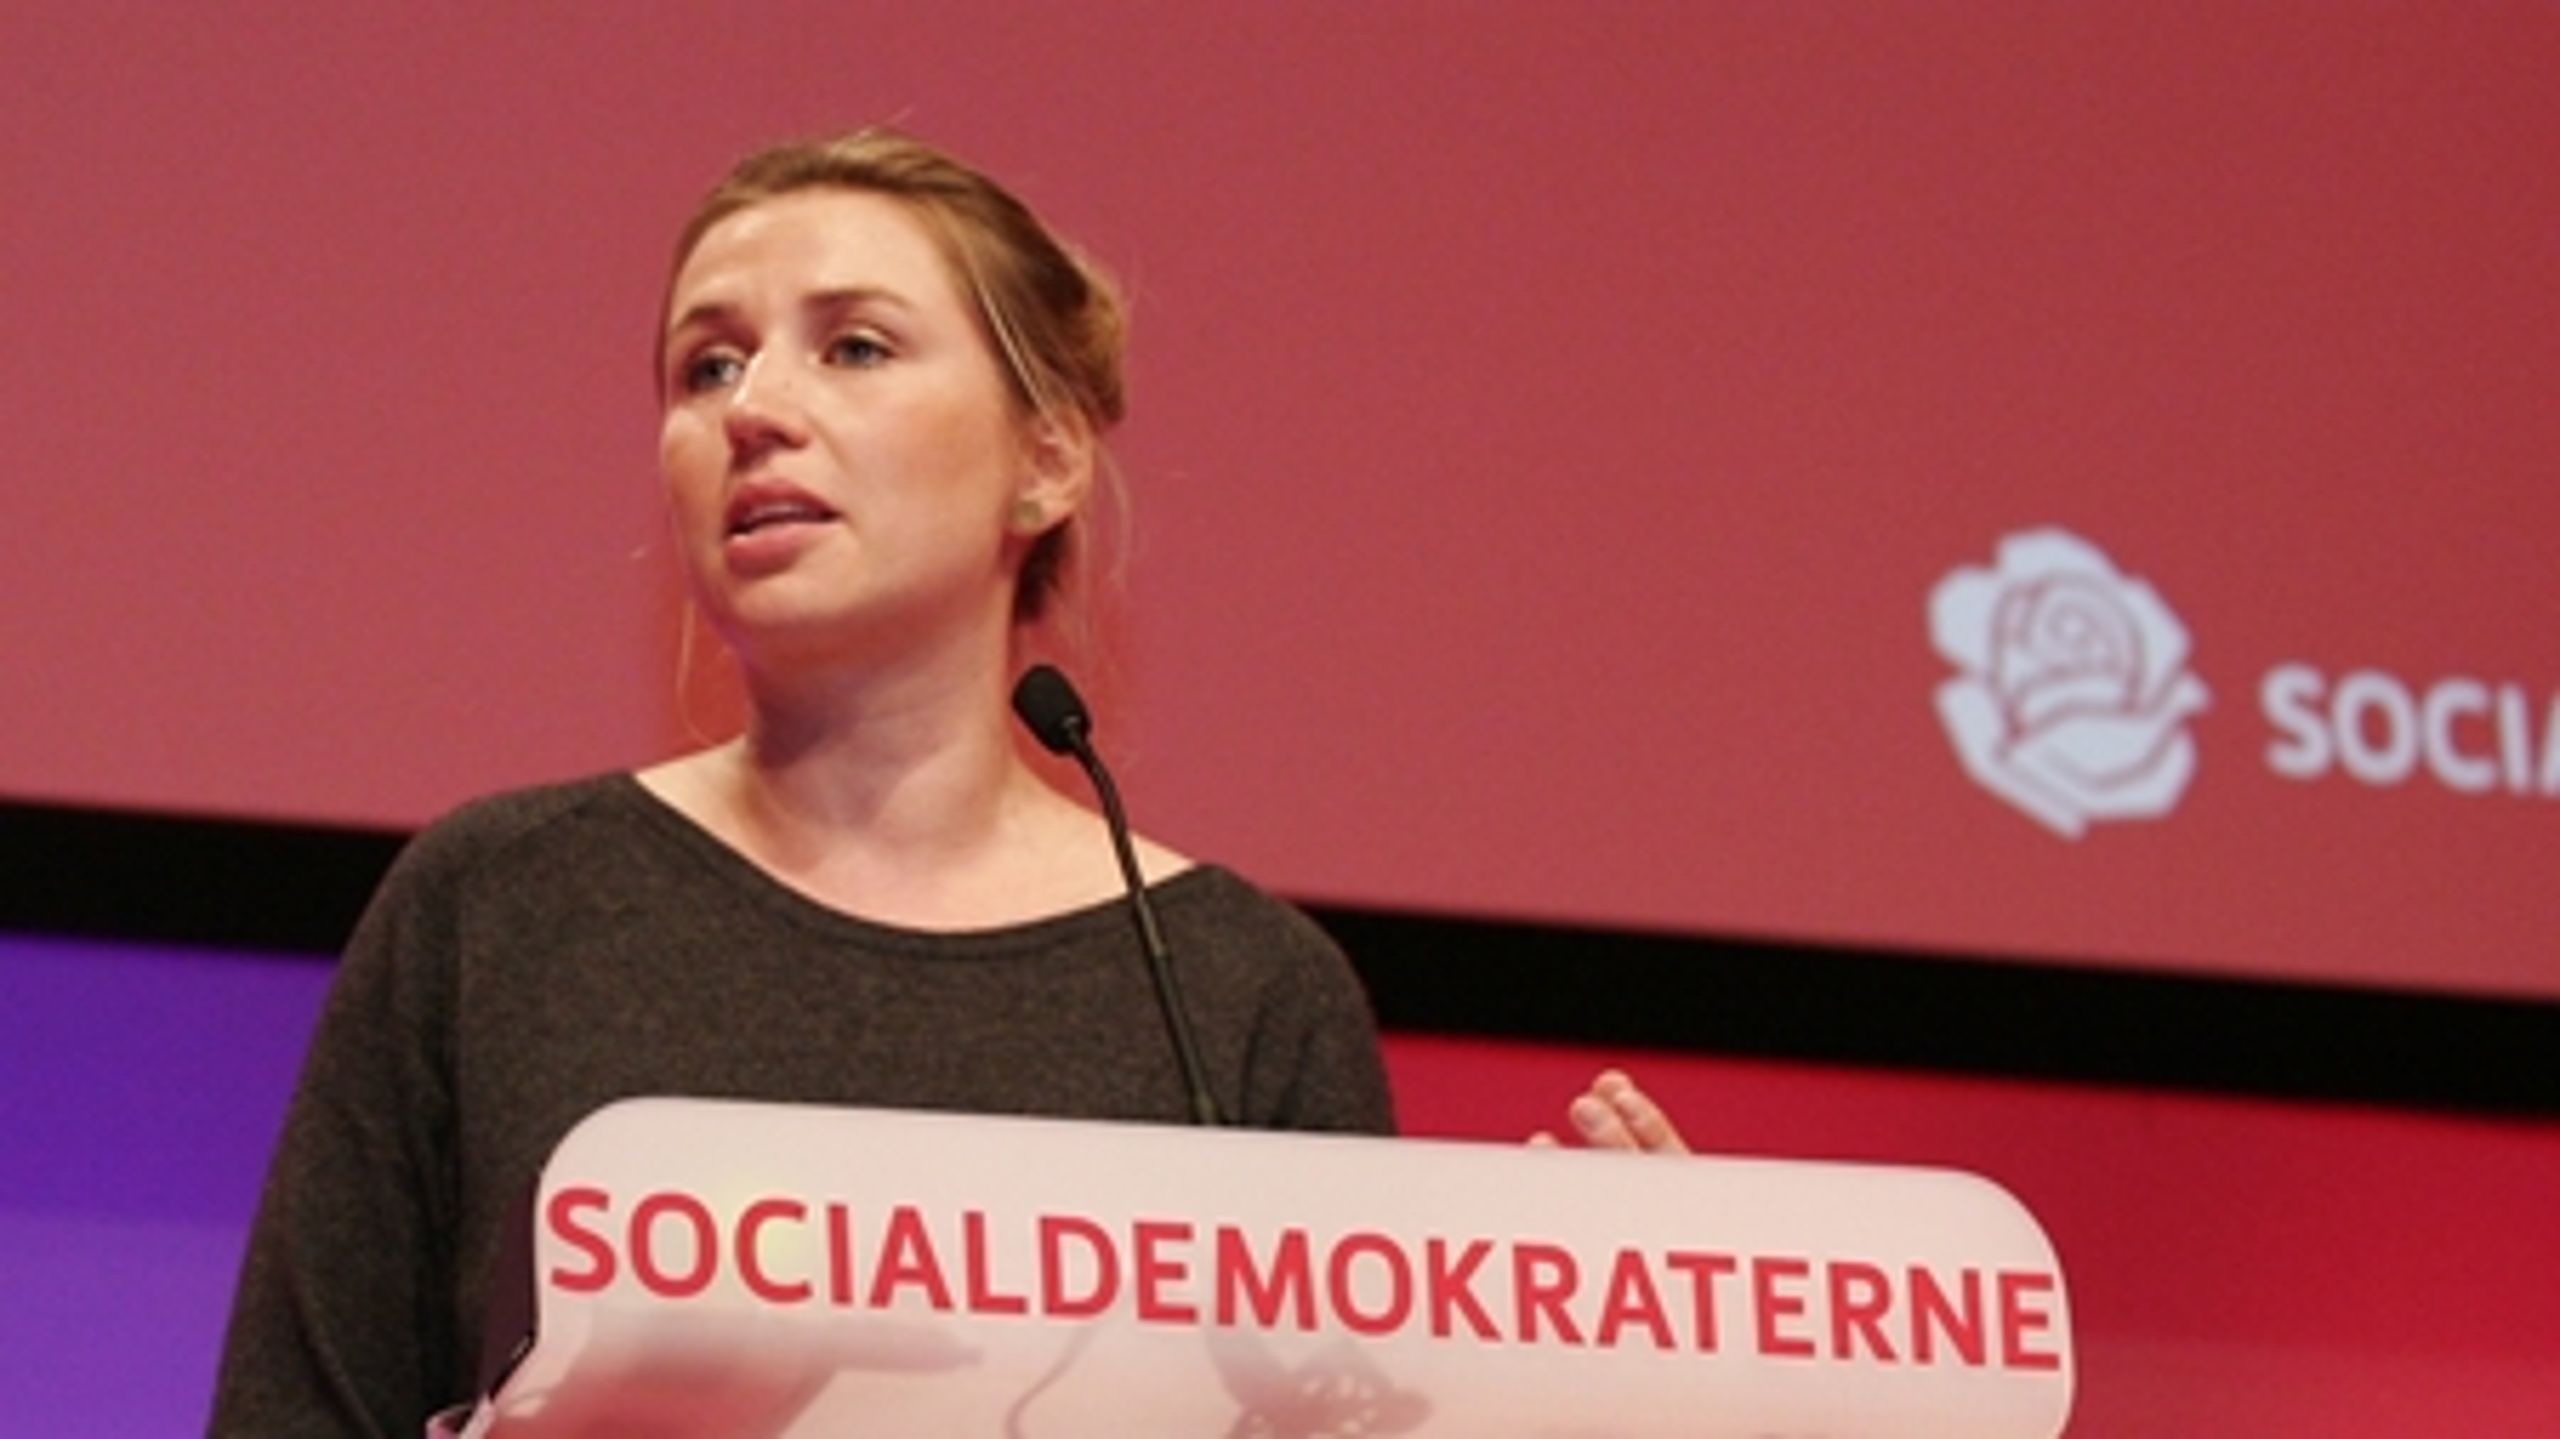 Socialdemokraterne - hér Mette Frederiksen på weekendens kongres - går ét mandat frem fra august til september, men må alligevel spejde forgæves efter et solidt, nyt flertal.